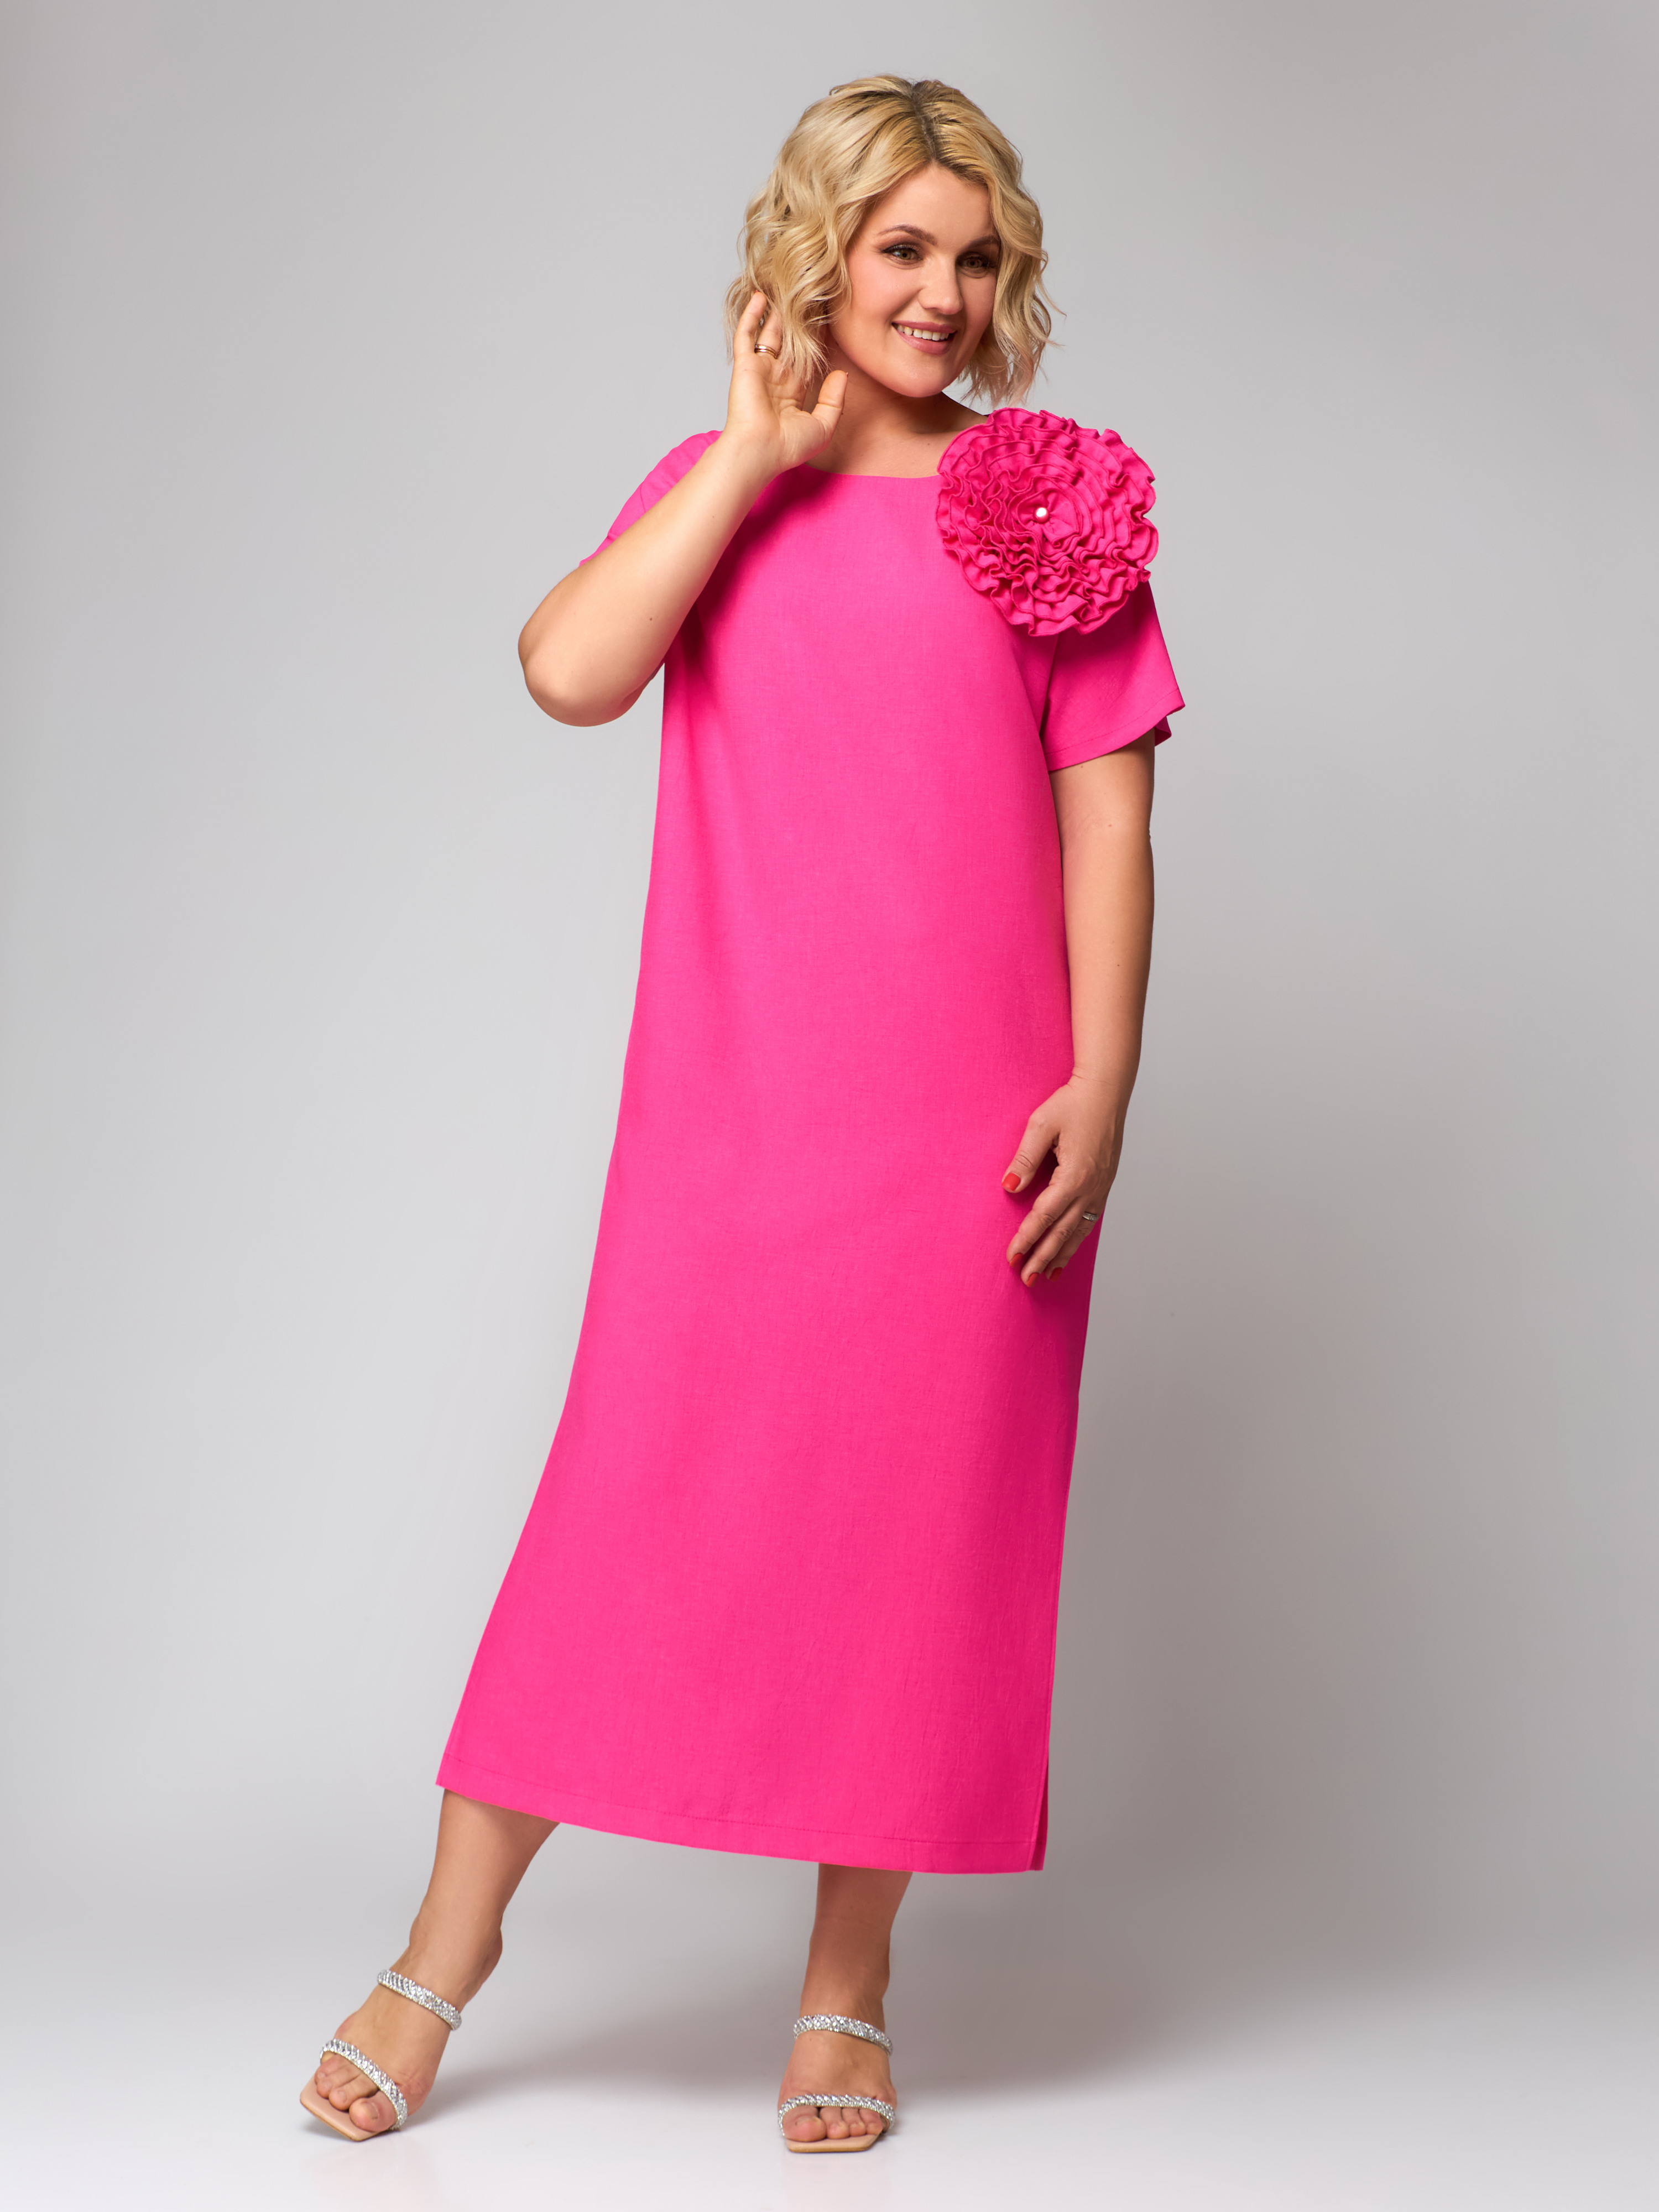 Платье Светлана-Стиль 1928 розовая фуксия